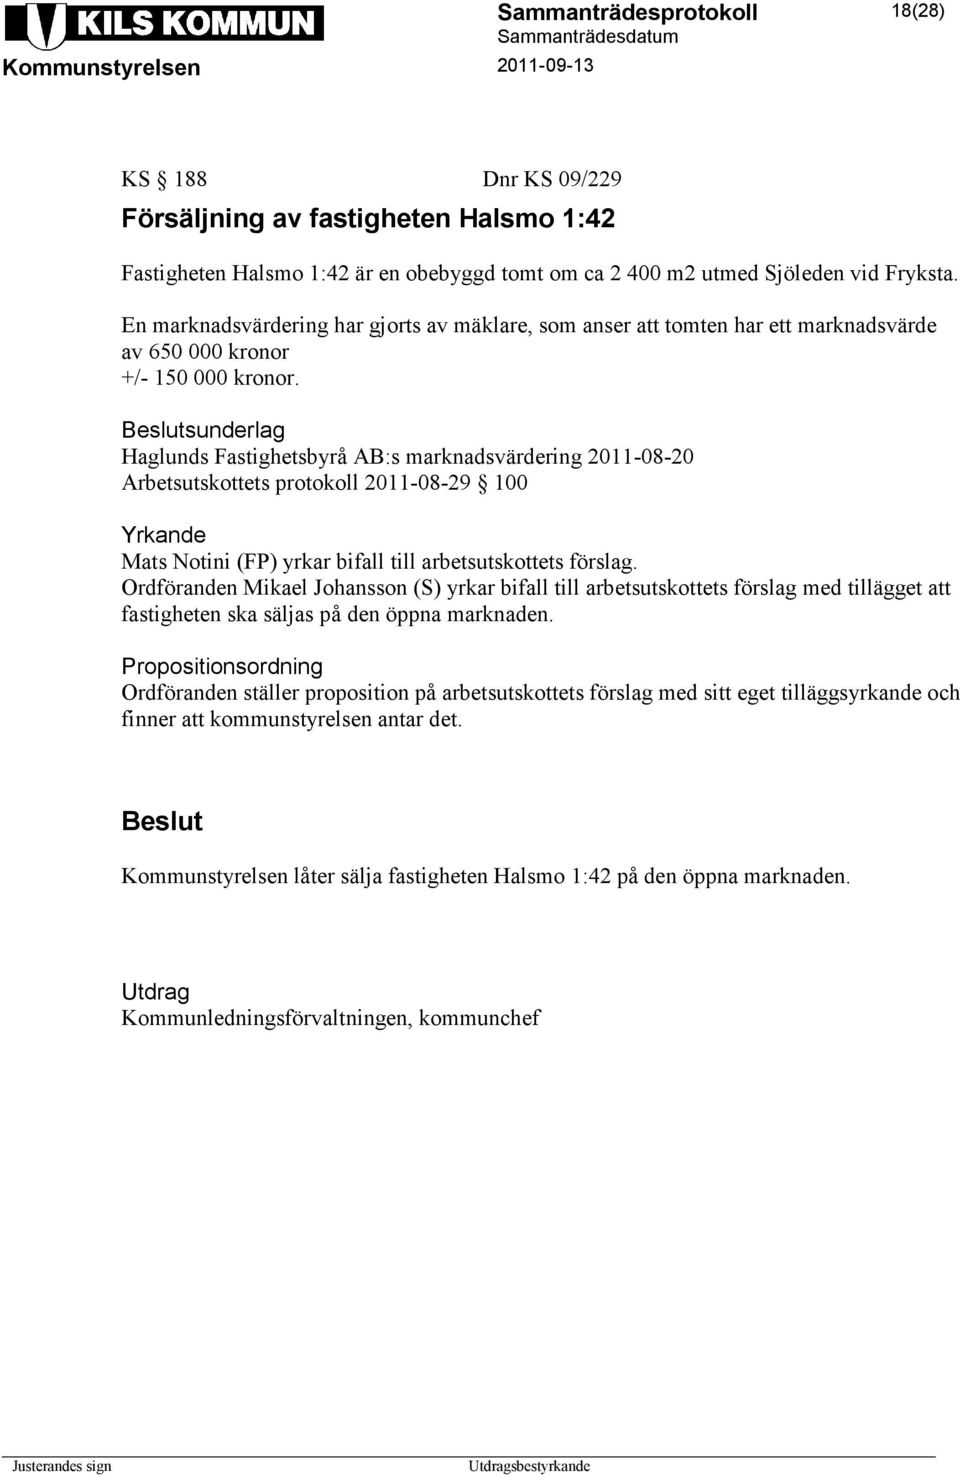 sunderlag Haglunds Fastighetsbyrå AB:s marknadsvärdering 2011-08-20 Arbetsutskottets protokoll 2011-08-29 100 Yrkande Mats Notini (FP) yrkar bifall till arbetsutskottets förslag.